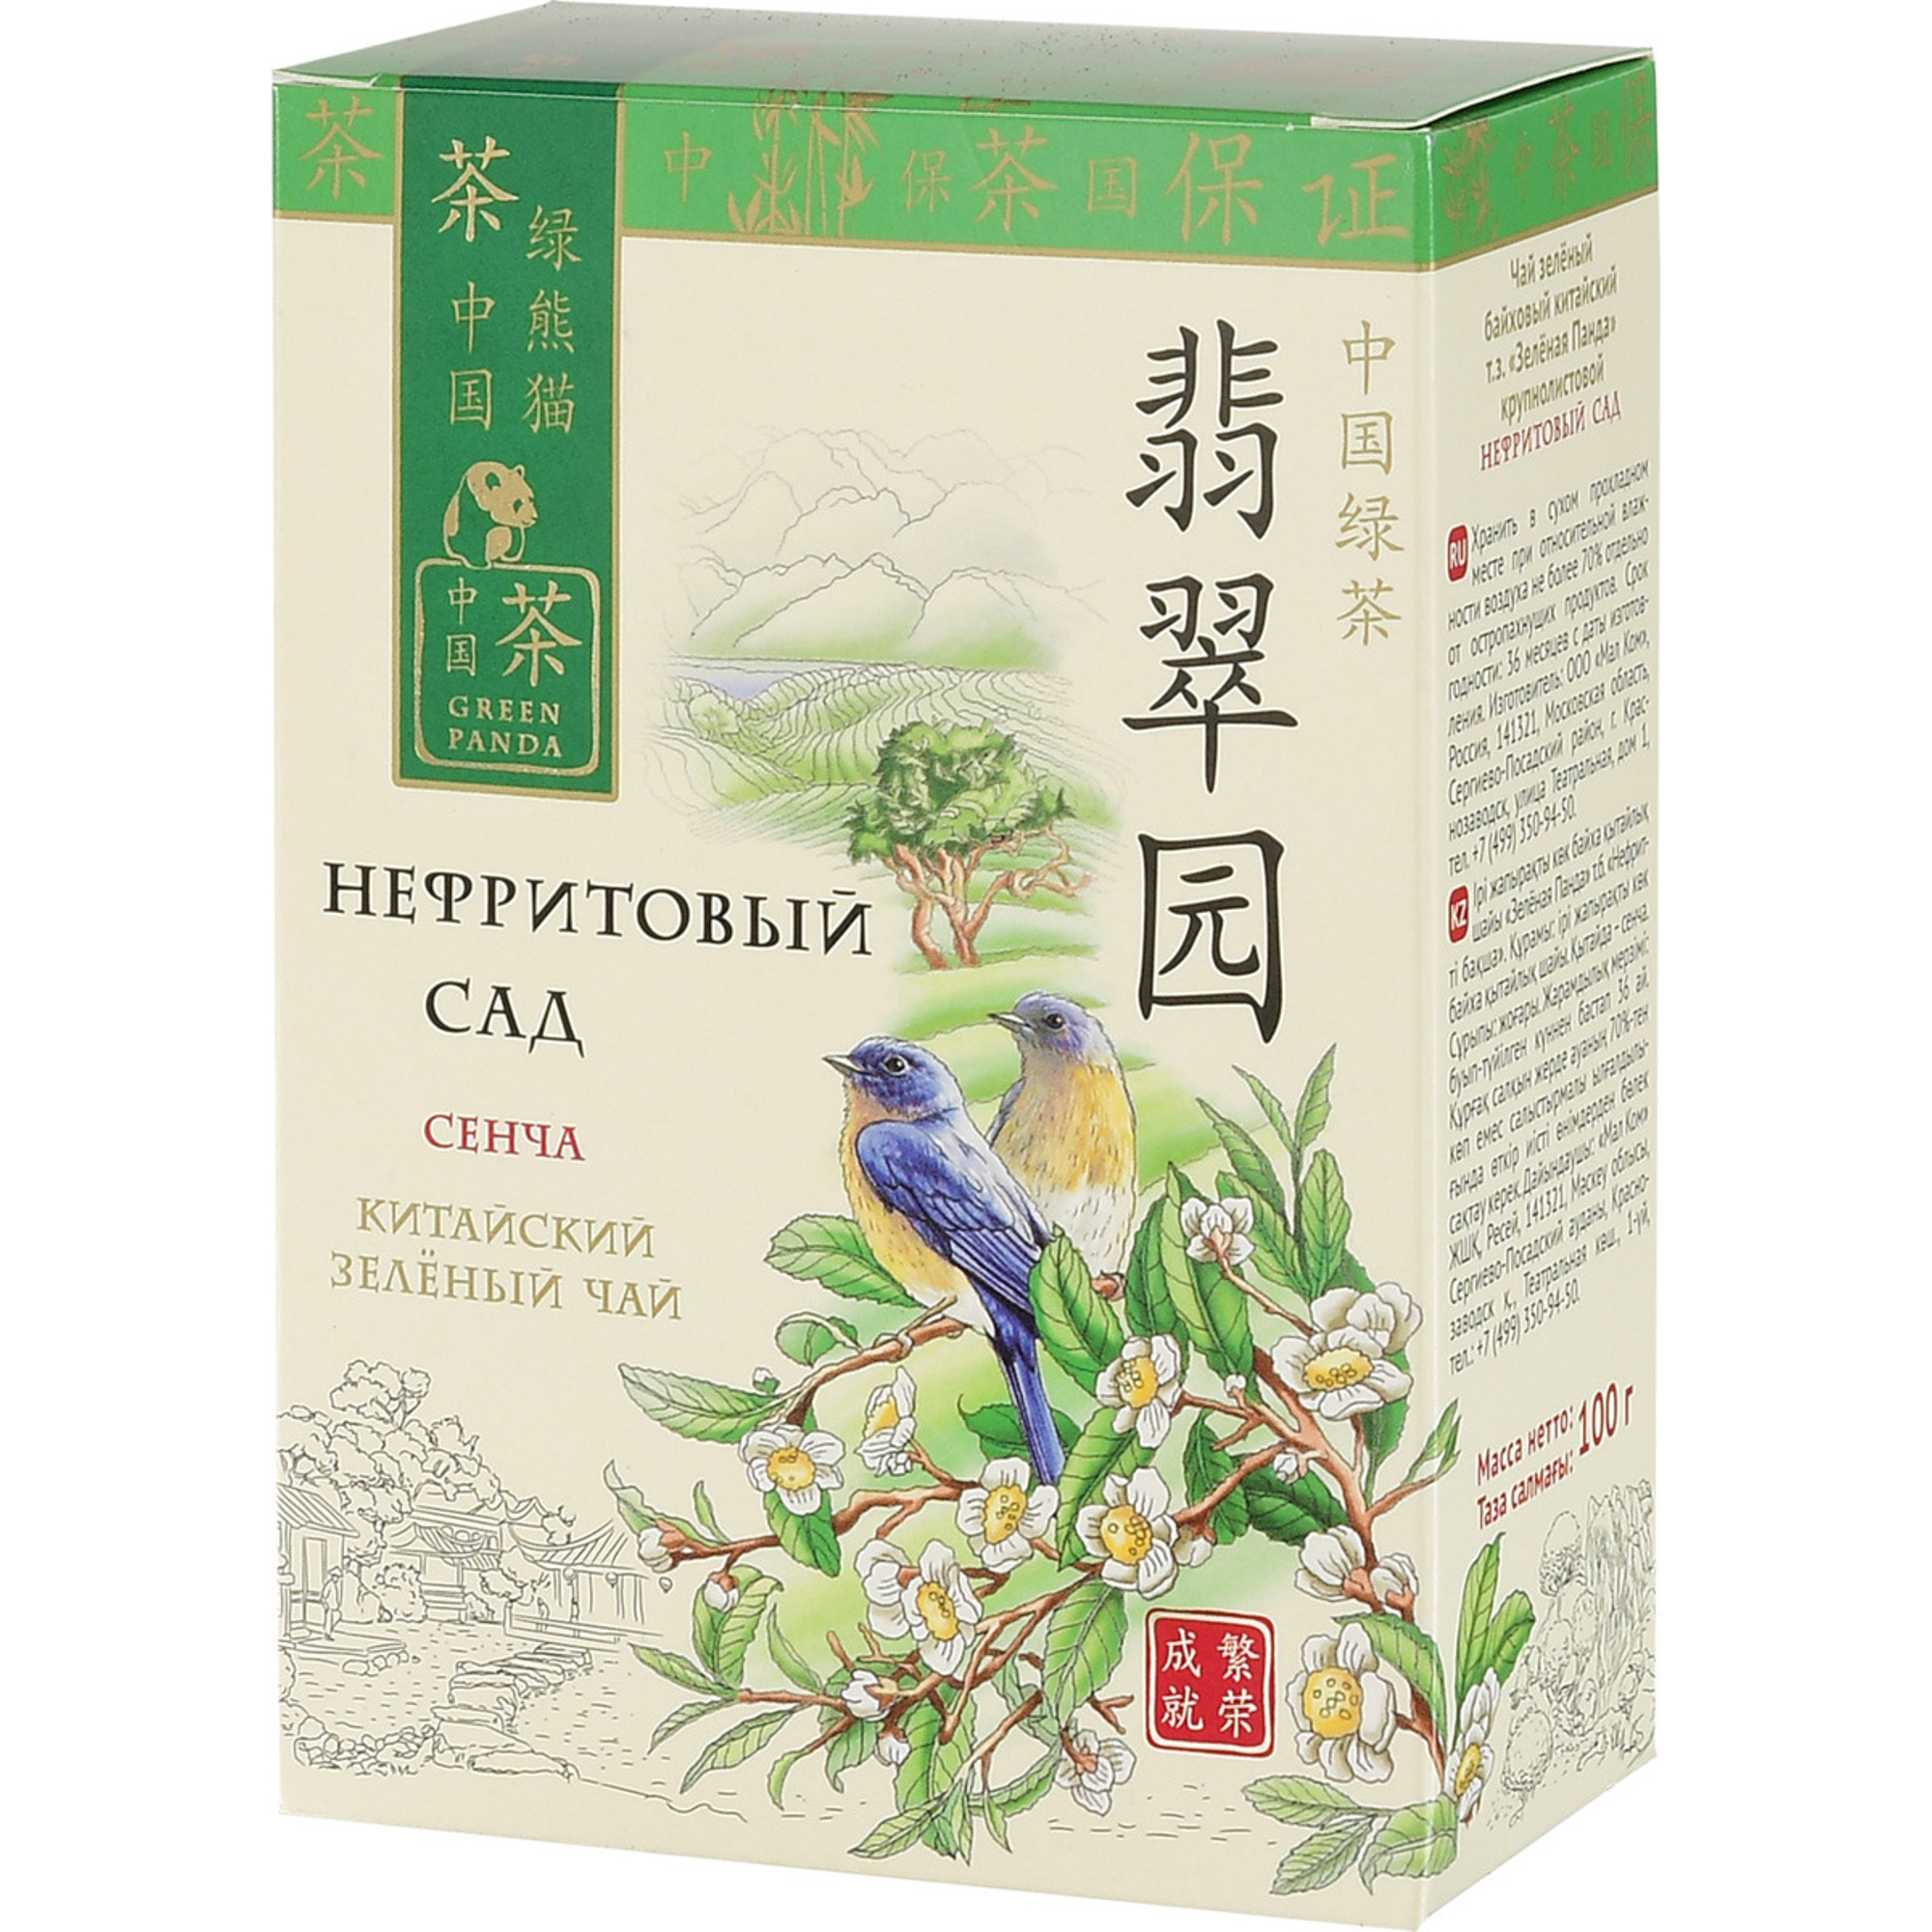 чай зеленый newby восточная сенча 100 г Чай зеленый Зеленая Панда Нефритовый сад Сенча листовой 100 г